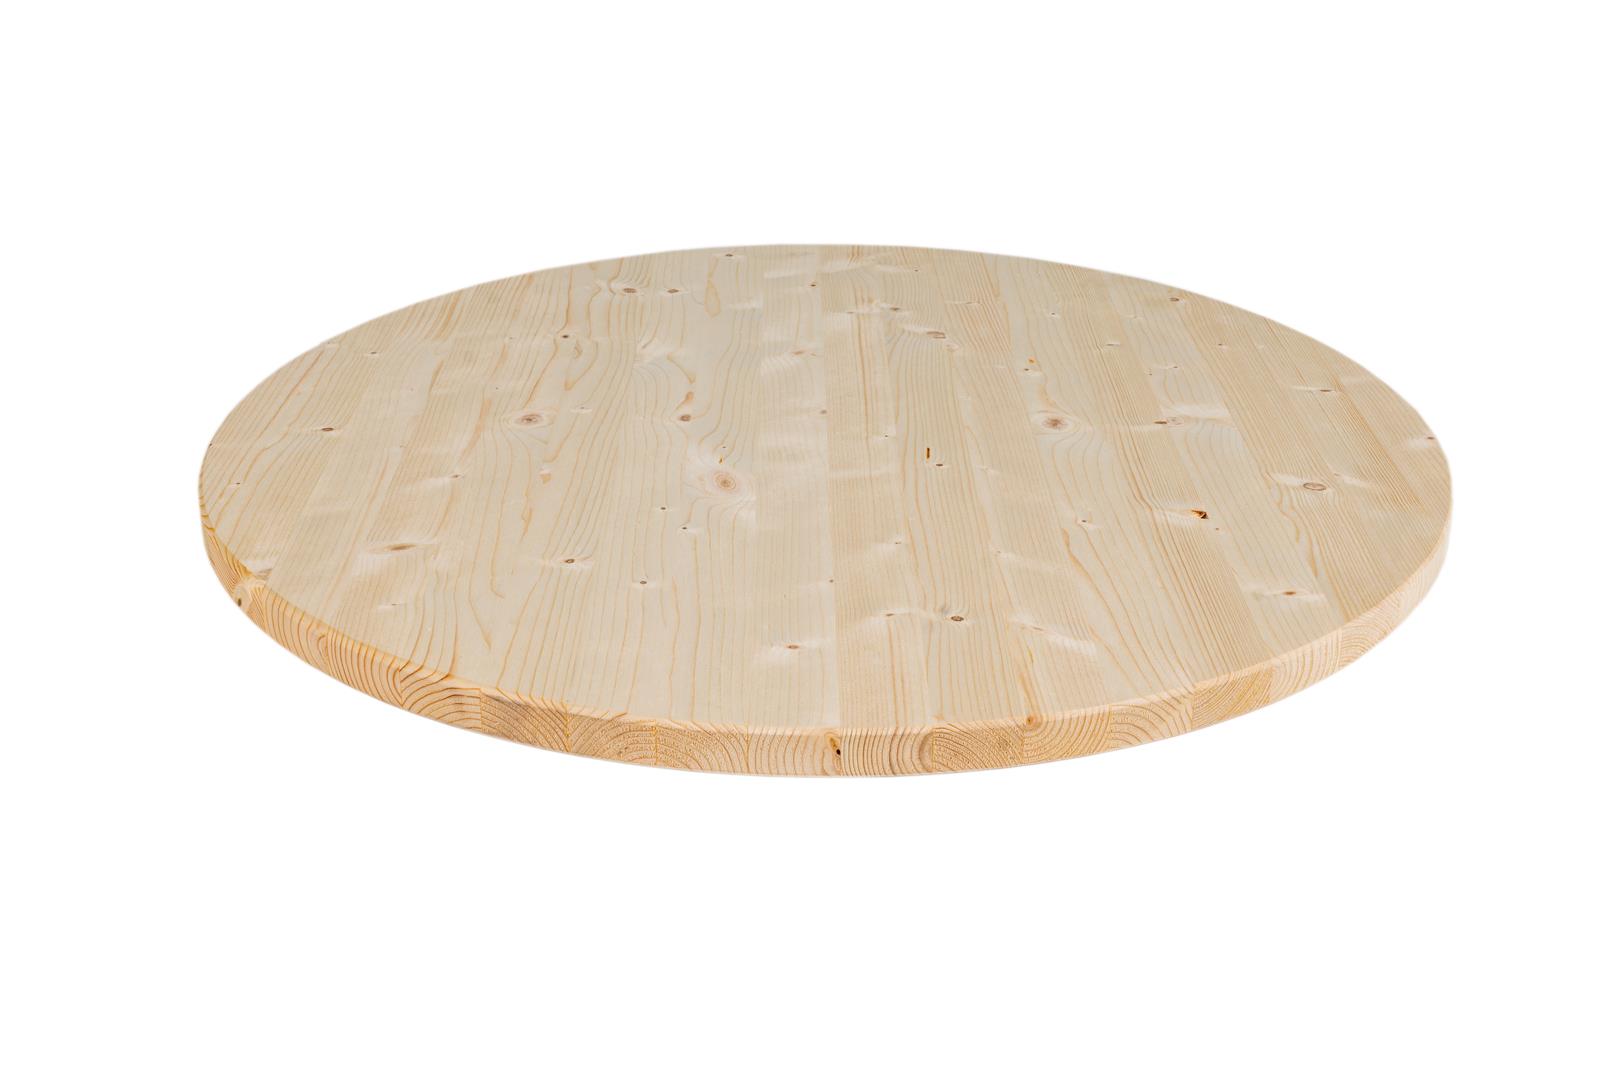 Kameraad reputatie staan Groot rond houten tafelblad 100 cm x 28 mm kopen? | MaximaVida.com